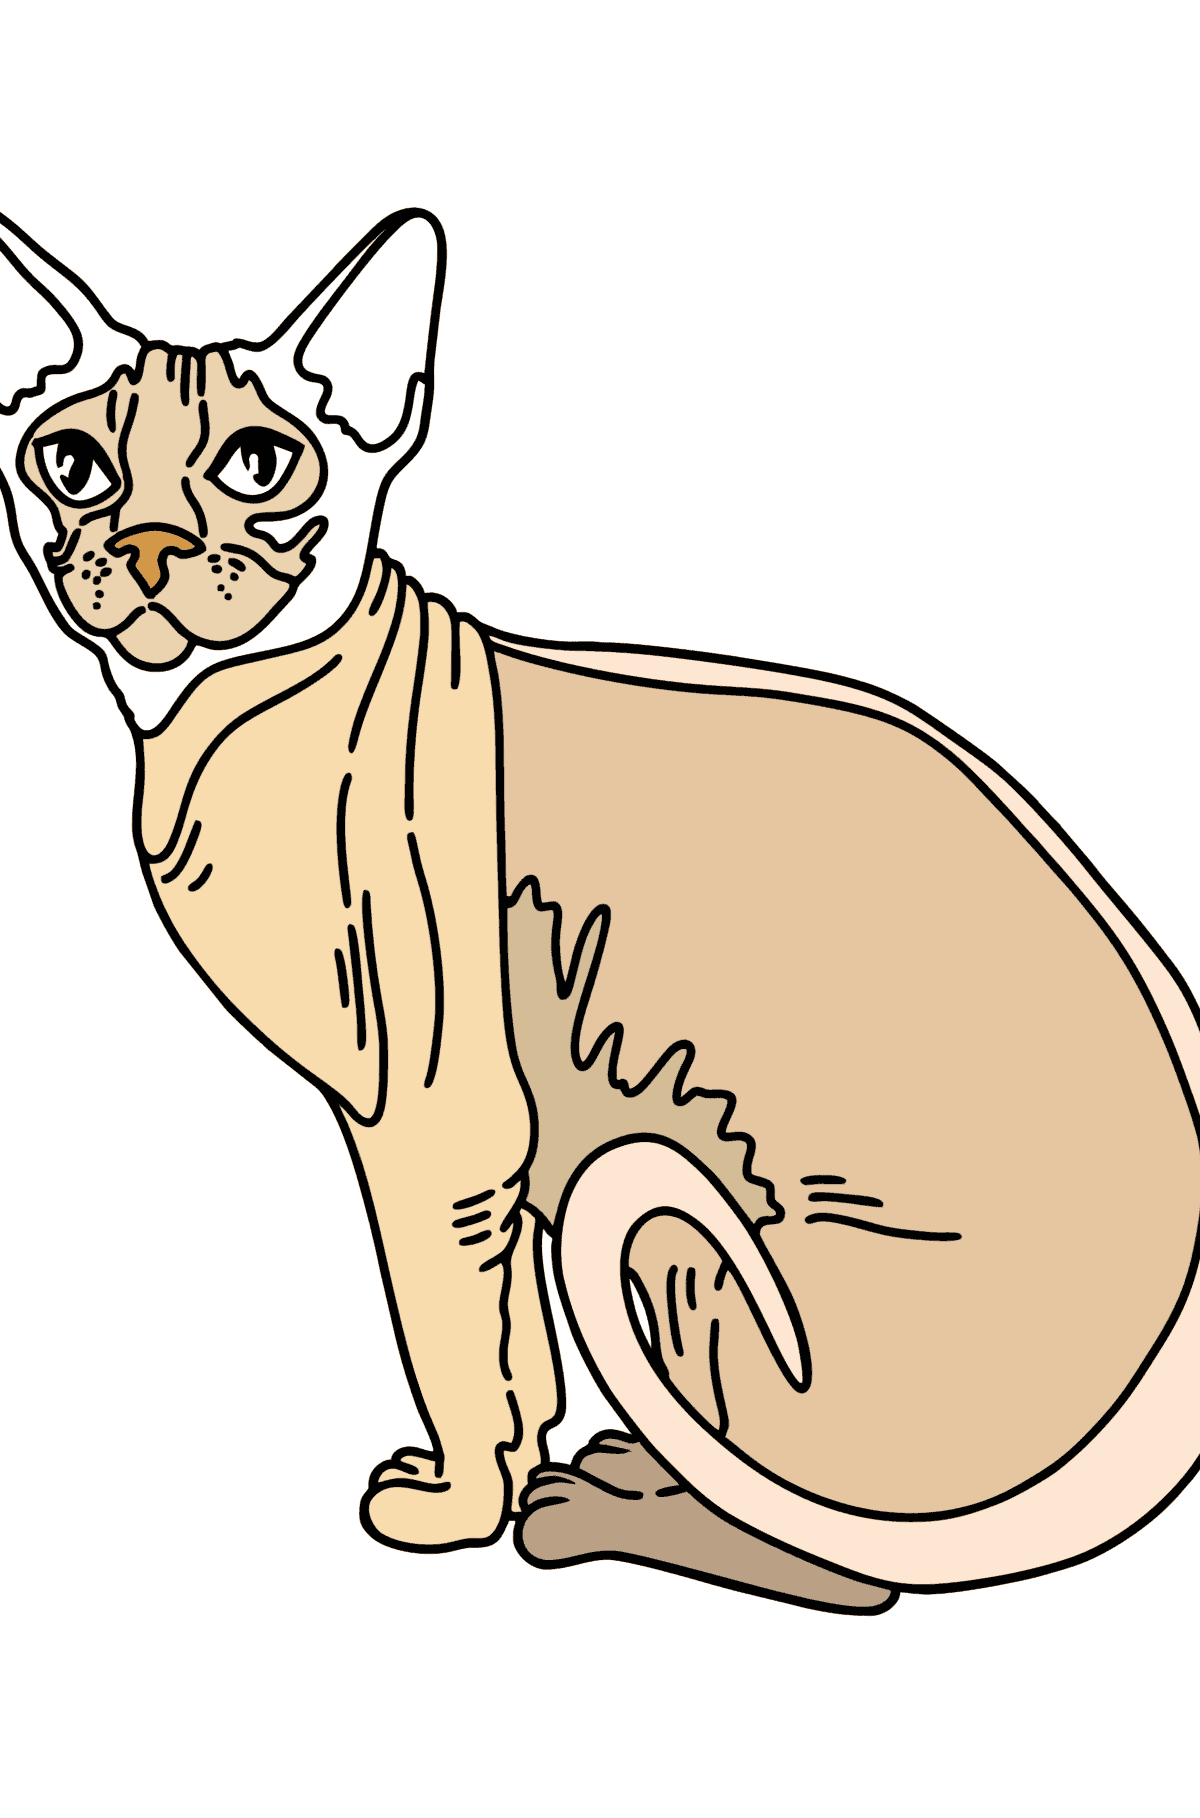 Tegning til fargelegging sphynx katt - Tegninger til fargelegging for barn